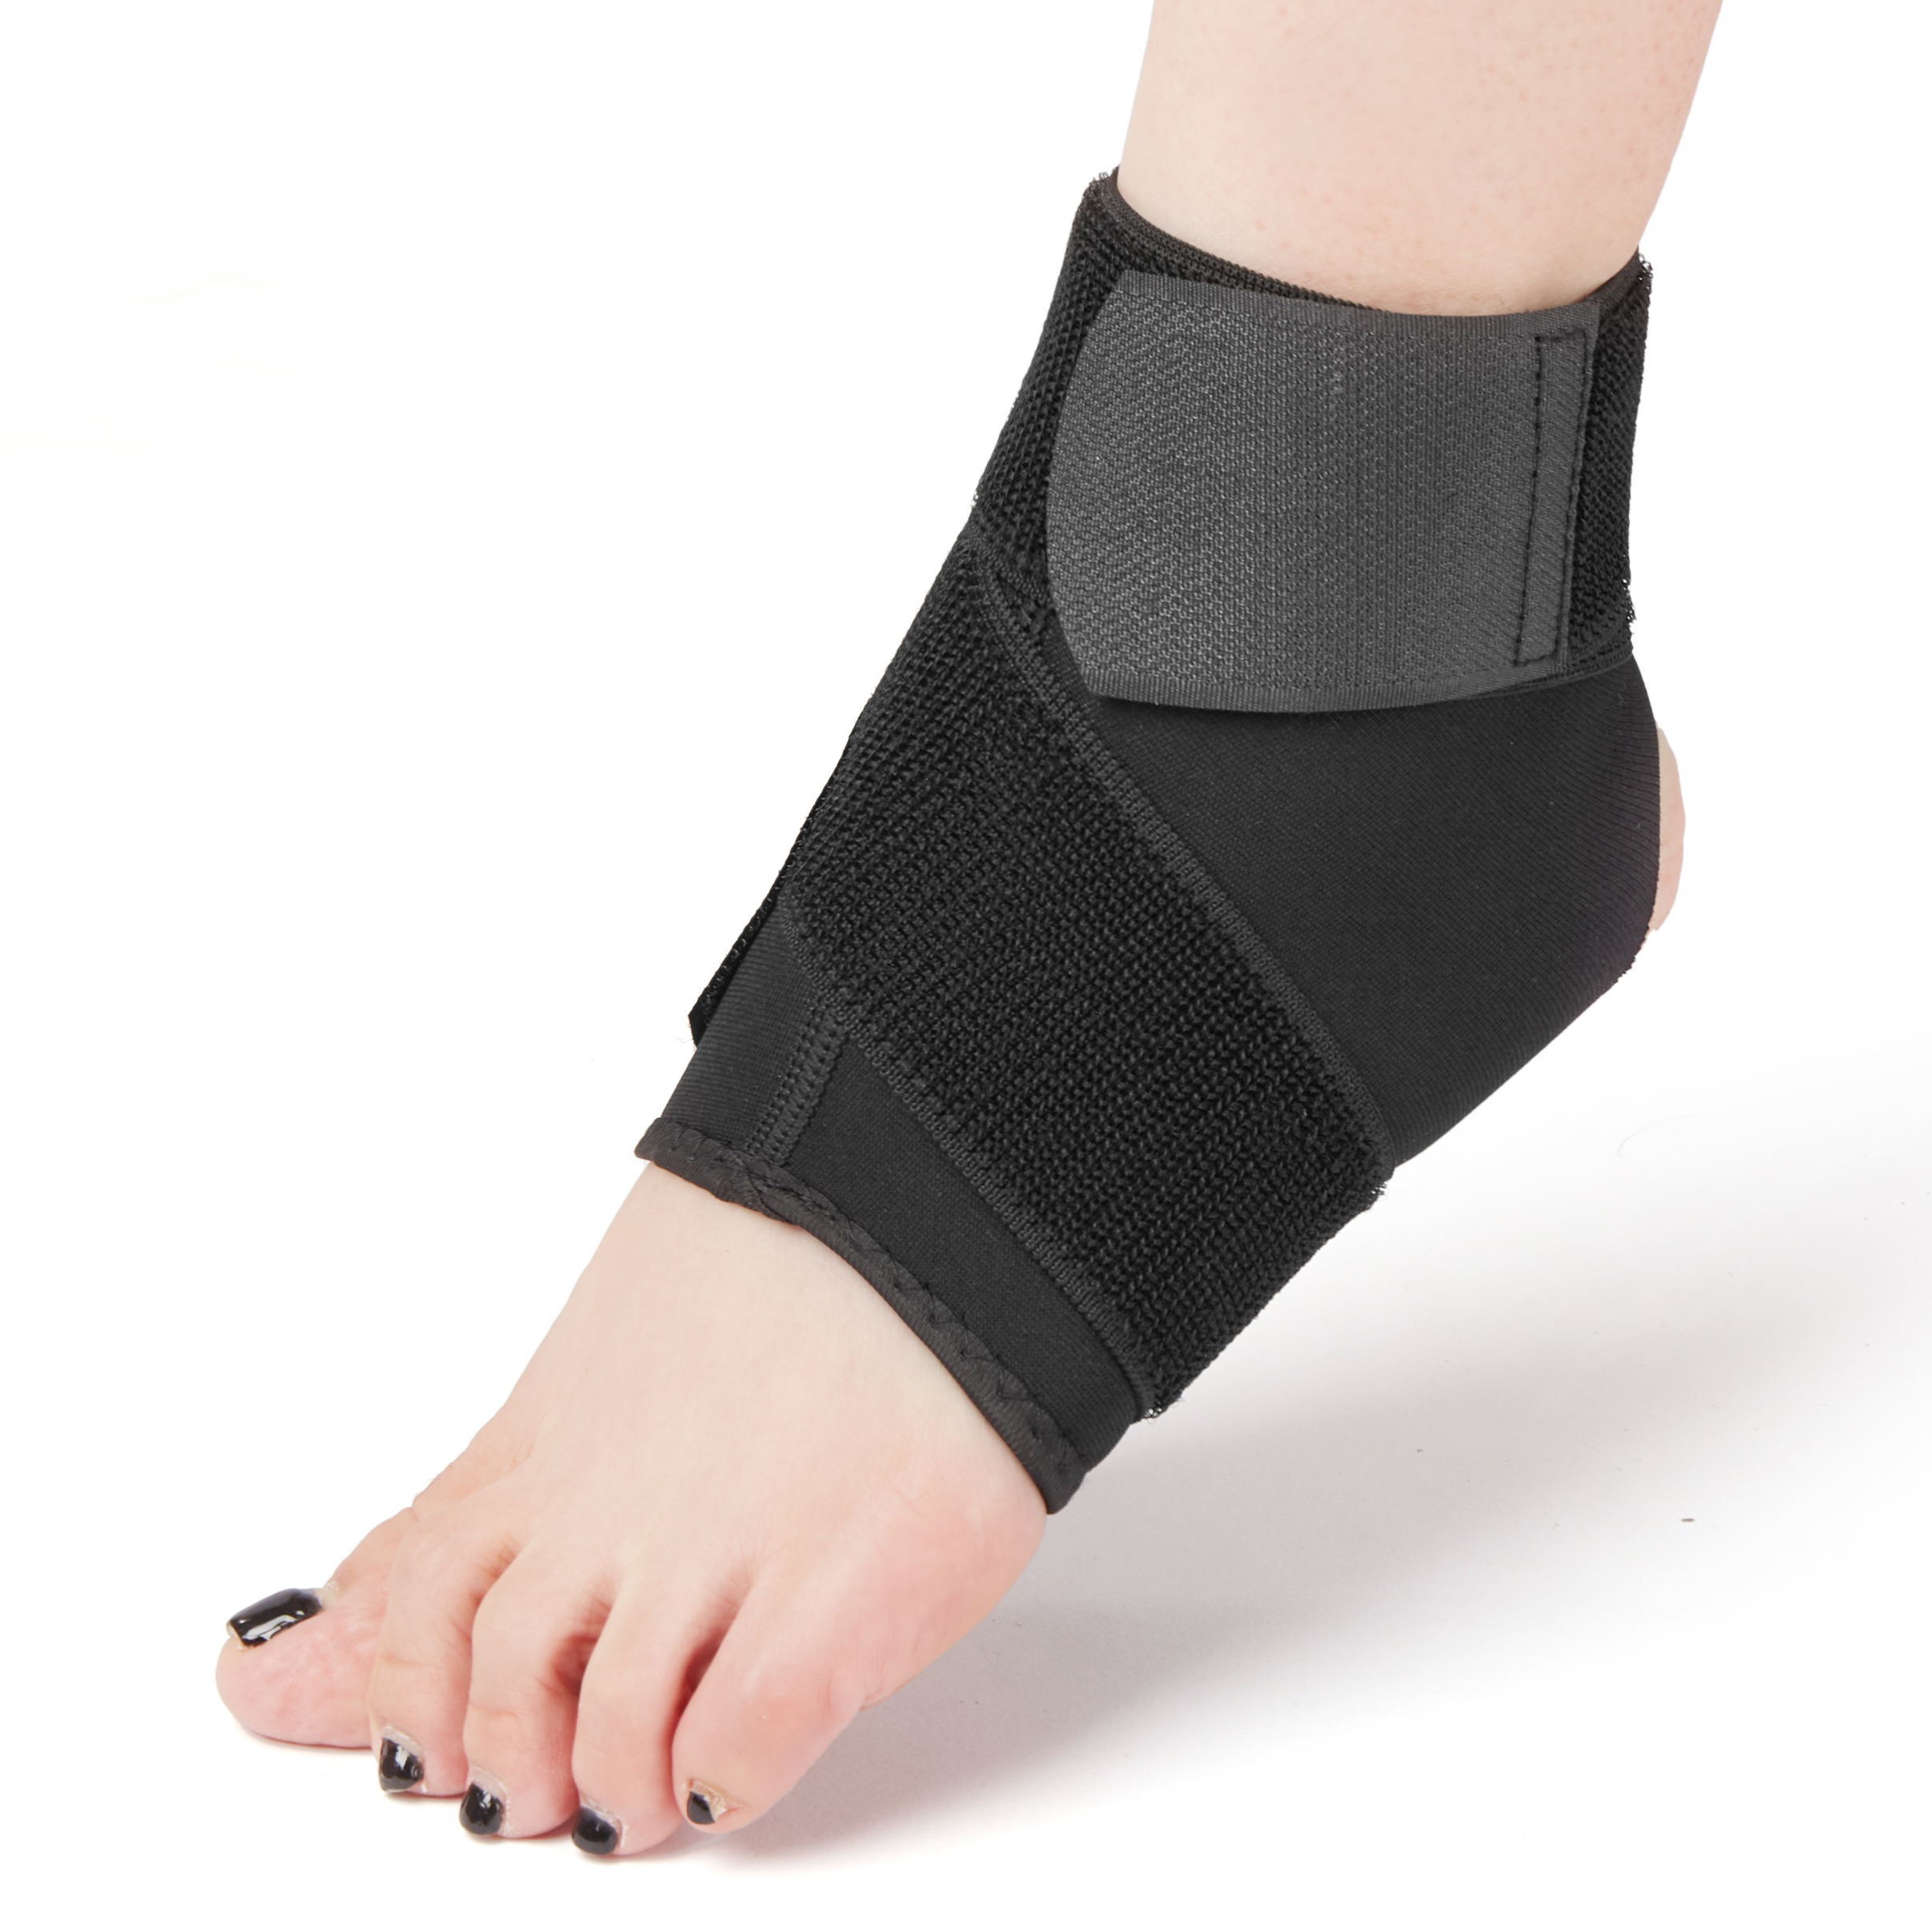 Makaginhawa nga Neoprene Adjustable Compression Ankle Guard